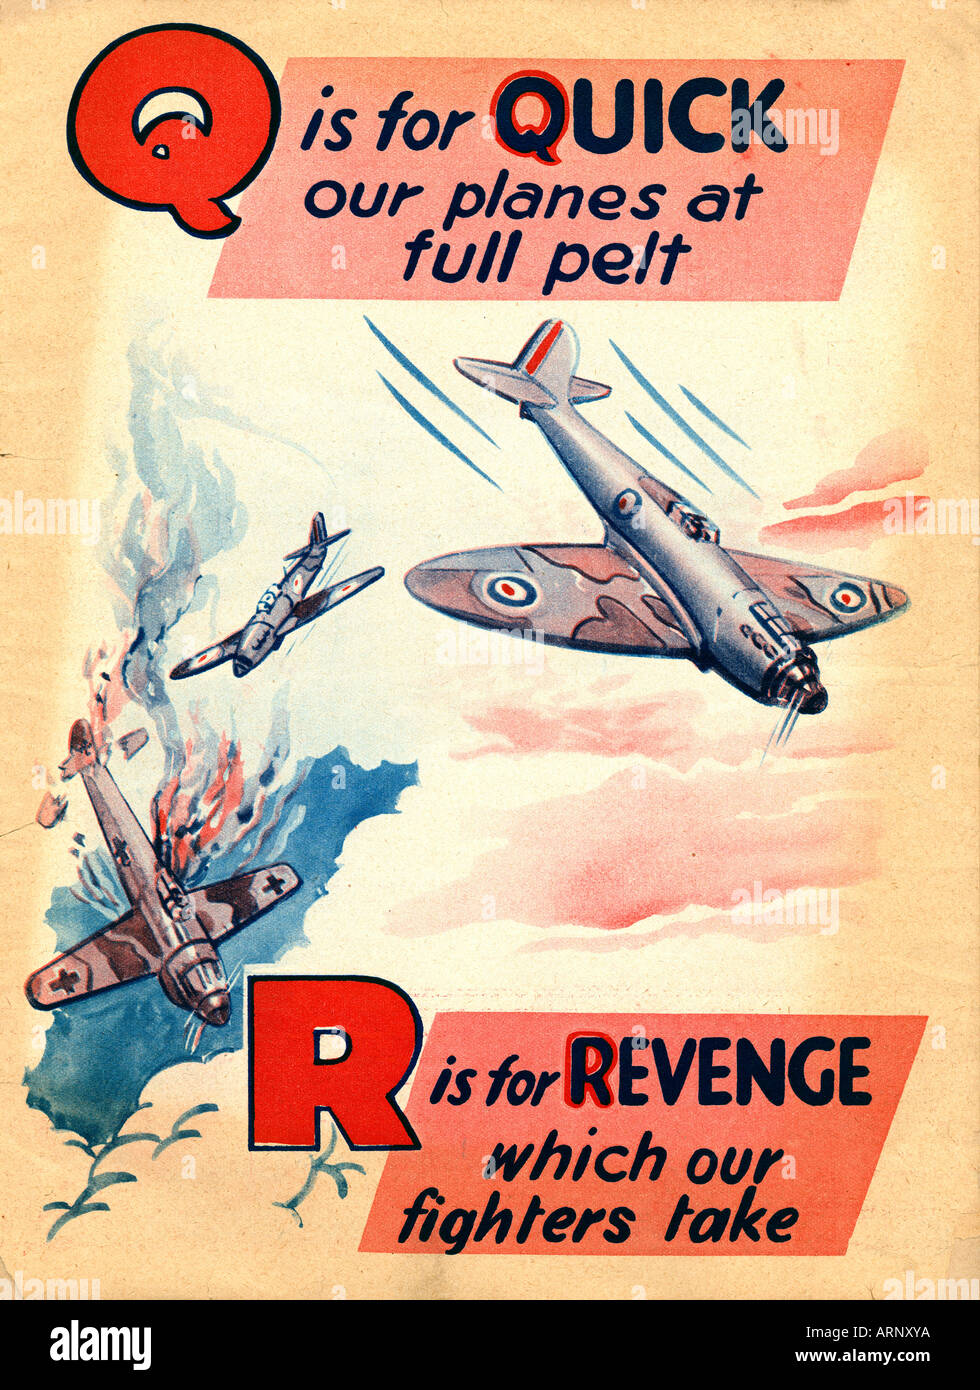 Bataille d'Angleterre Q R rapidement et de vengeance qui nos chasseurs prendre - duel aérien au dessus du canal - alphabet pour enfants britanniques à partir de 1939-45 Banque D'Images